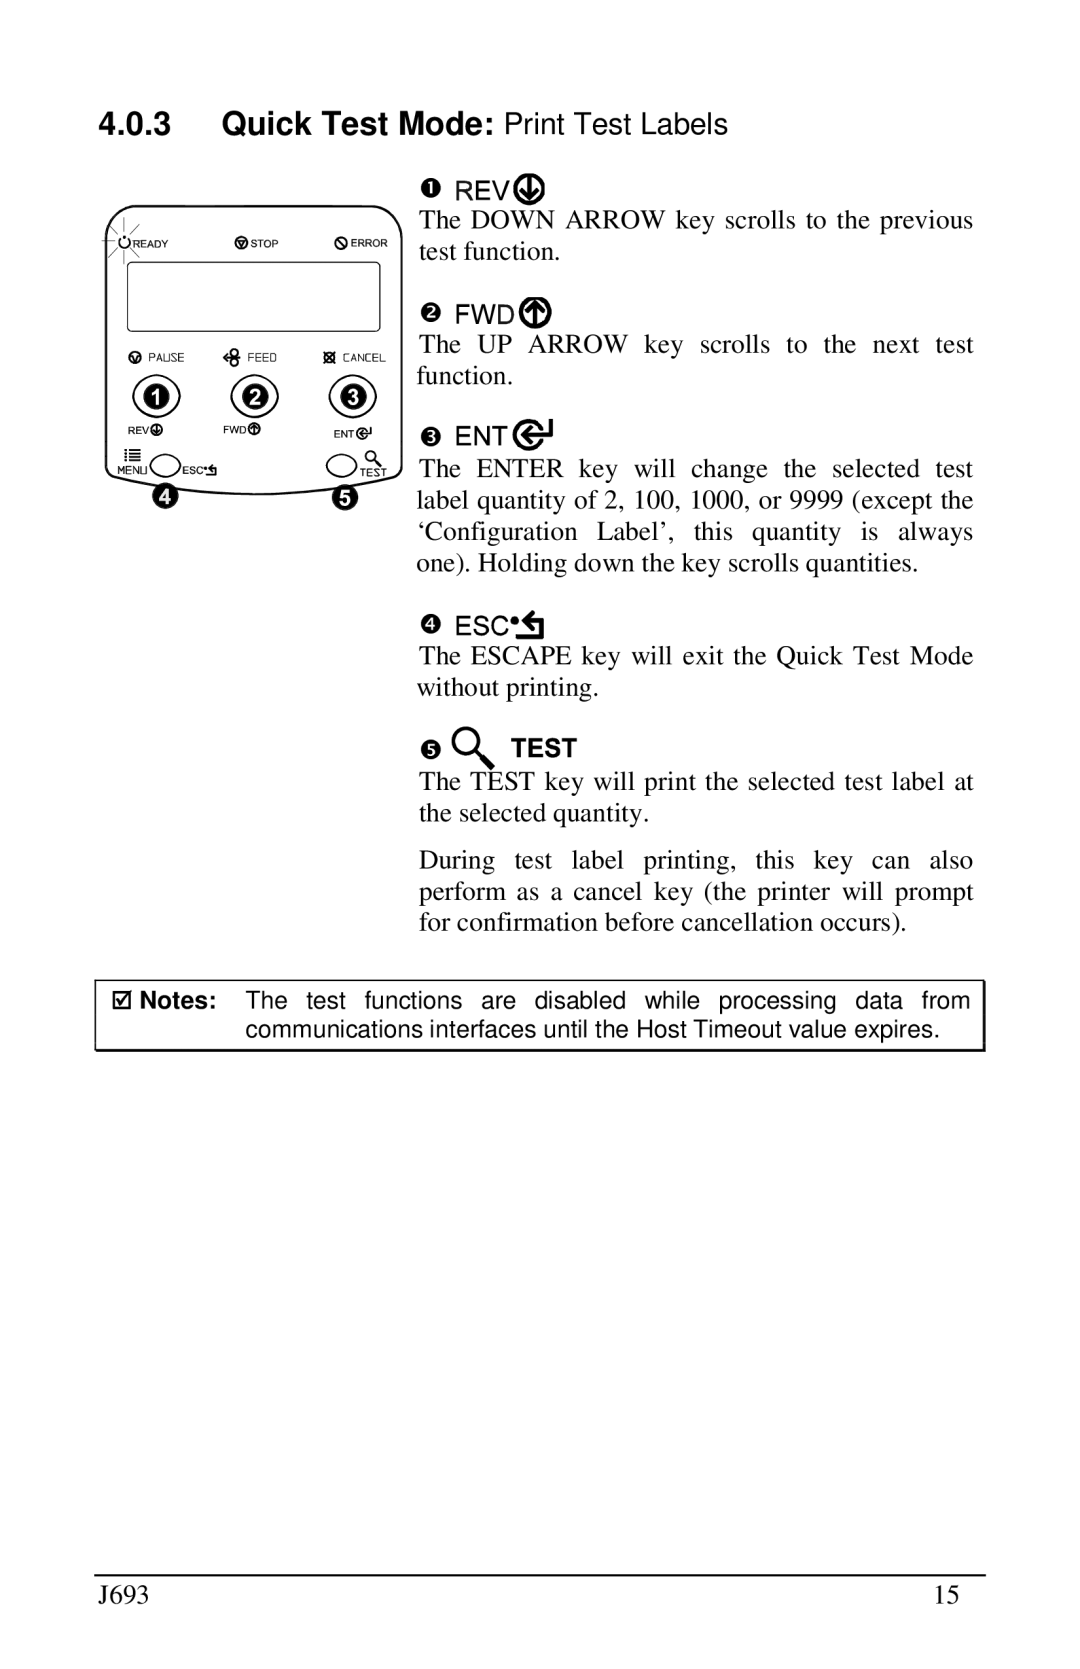 Pitney Bowes J693 manual Quick Test M de Print Test Labels 